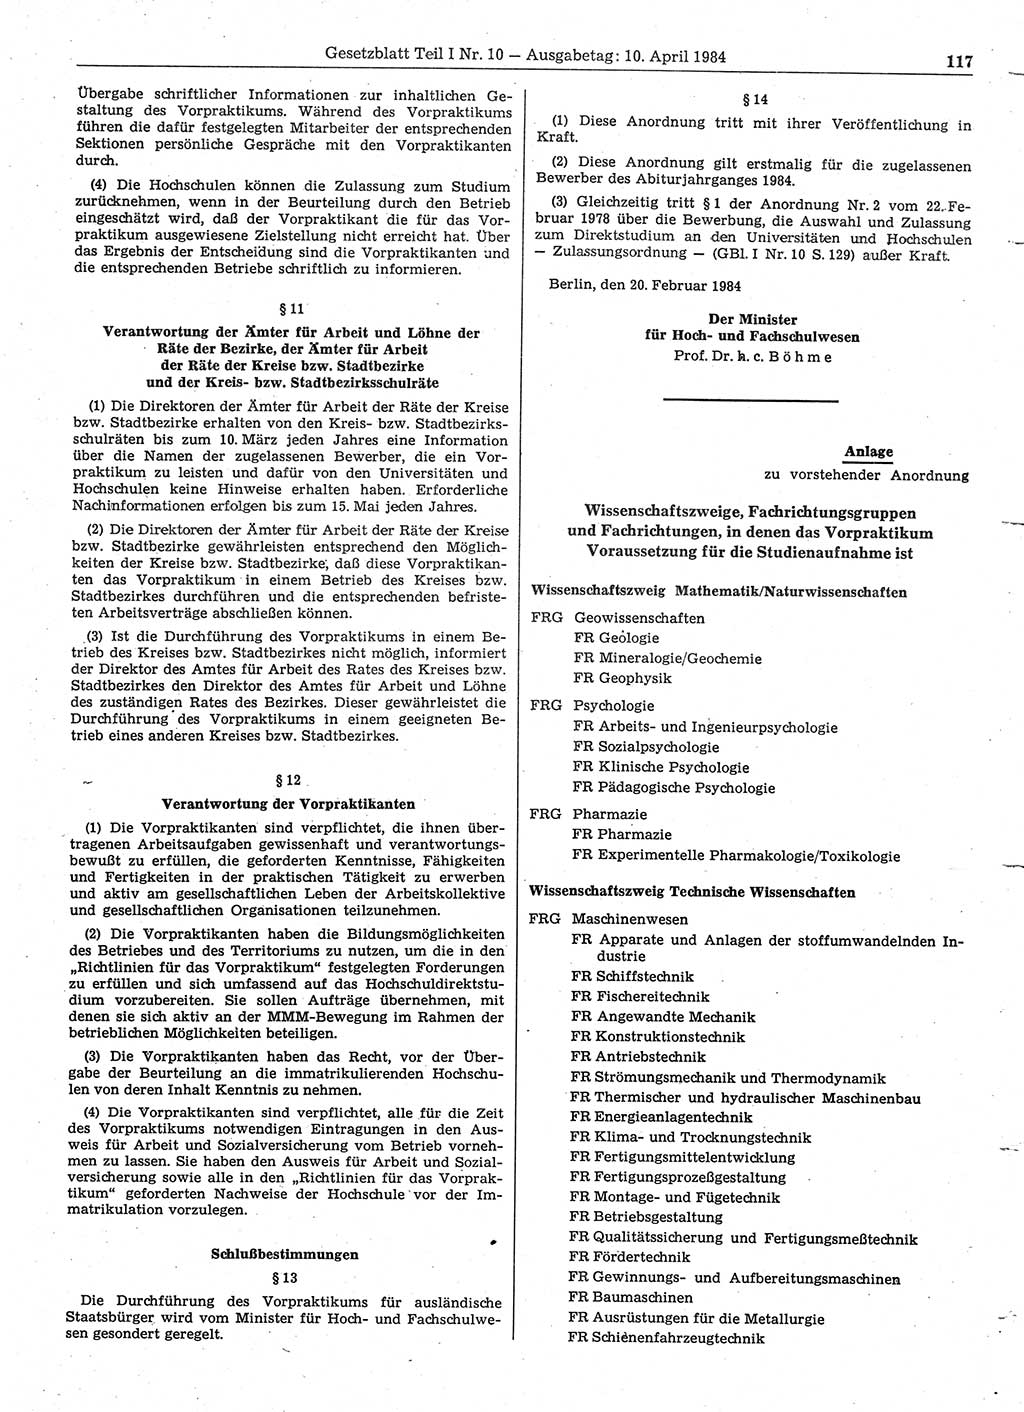 Gesetzblatt (GBl.) der Deutschen Demokratischen Republik (DDR) Teil Ⅰ 1984, Seite 117 (GBl. DDR Ⅰ 1984, S. 117)